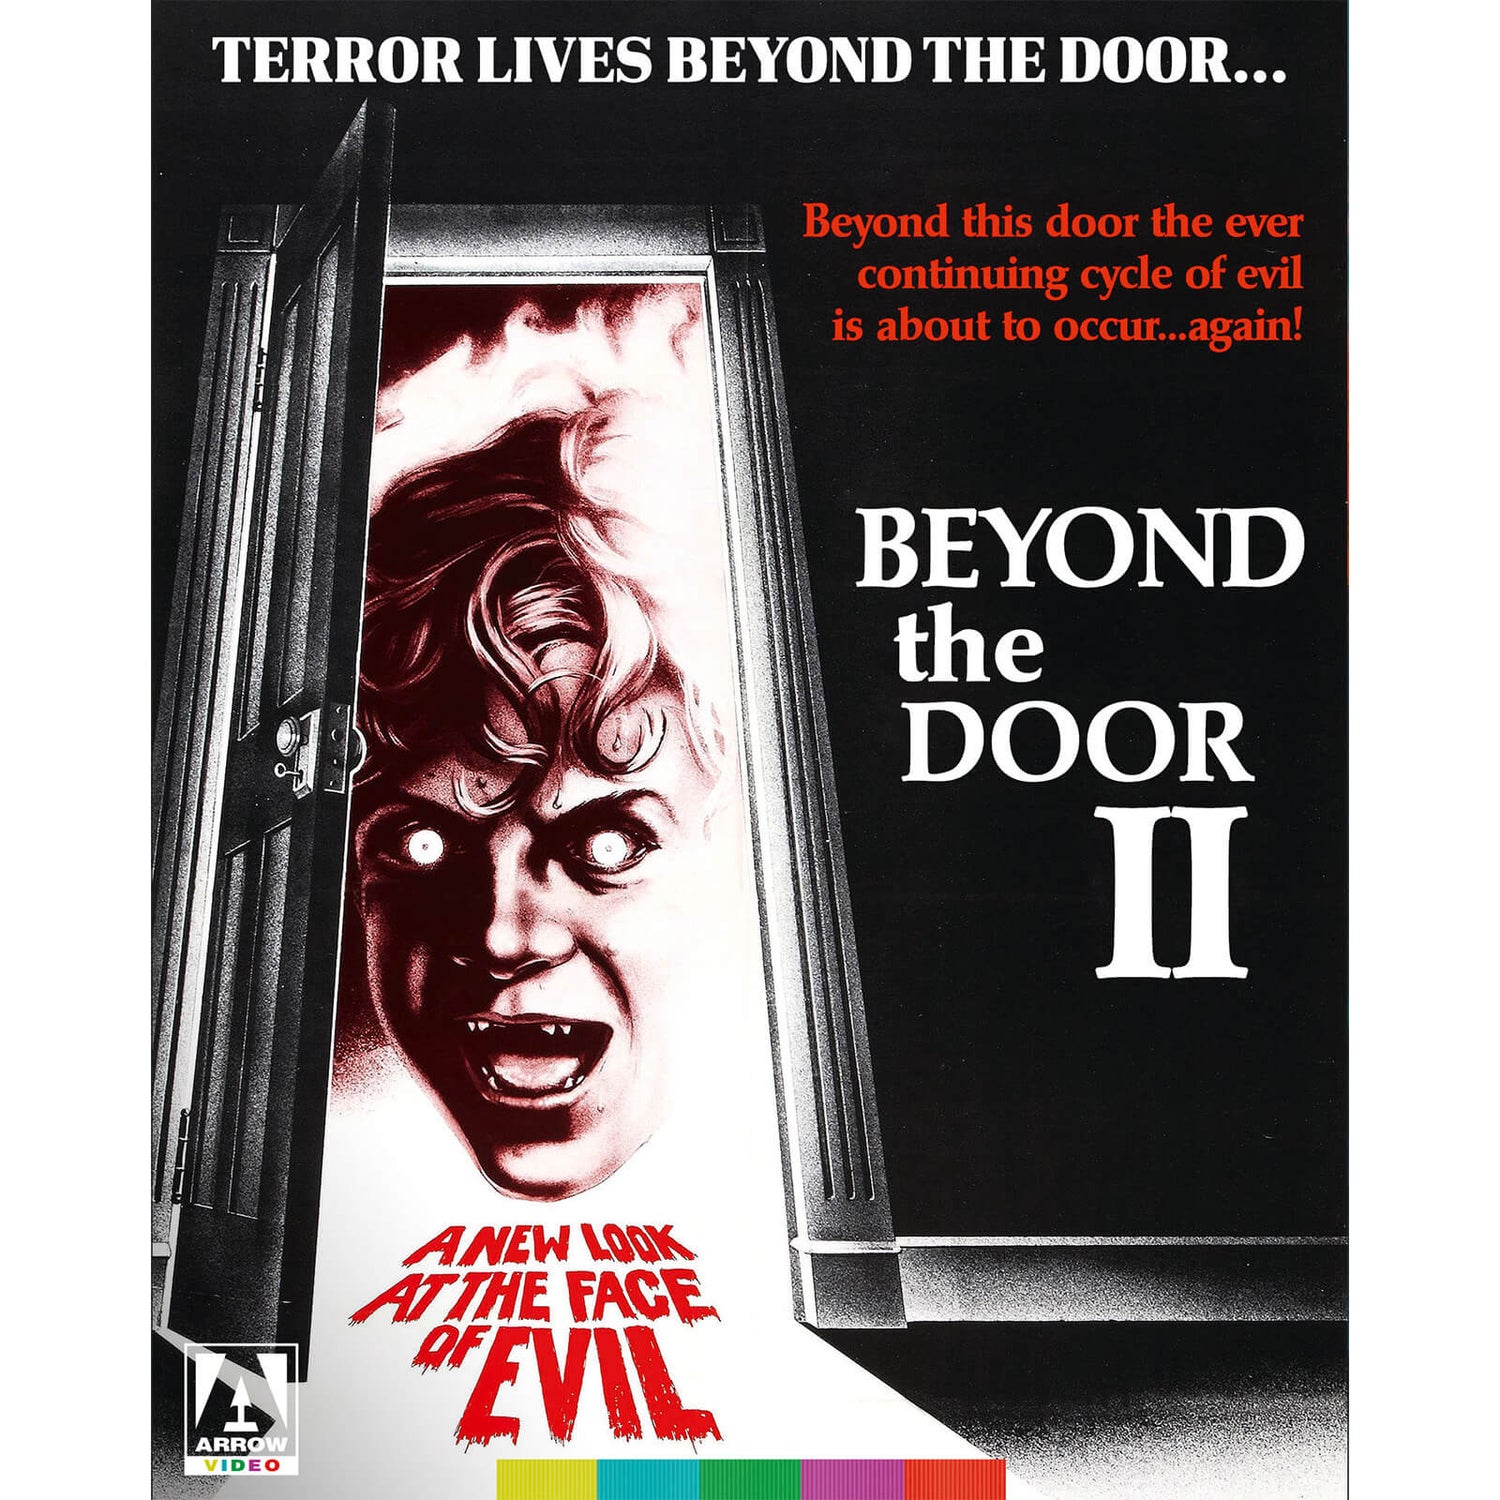 Shock Alternate "Beyond the Door II" - Arrow Store Exclusive O-Card